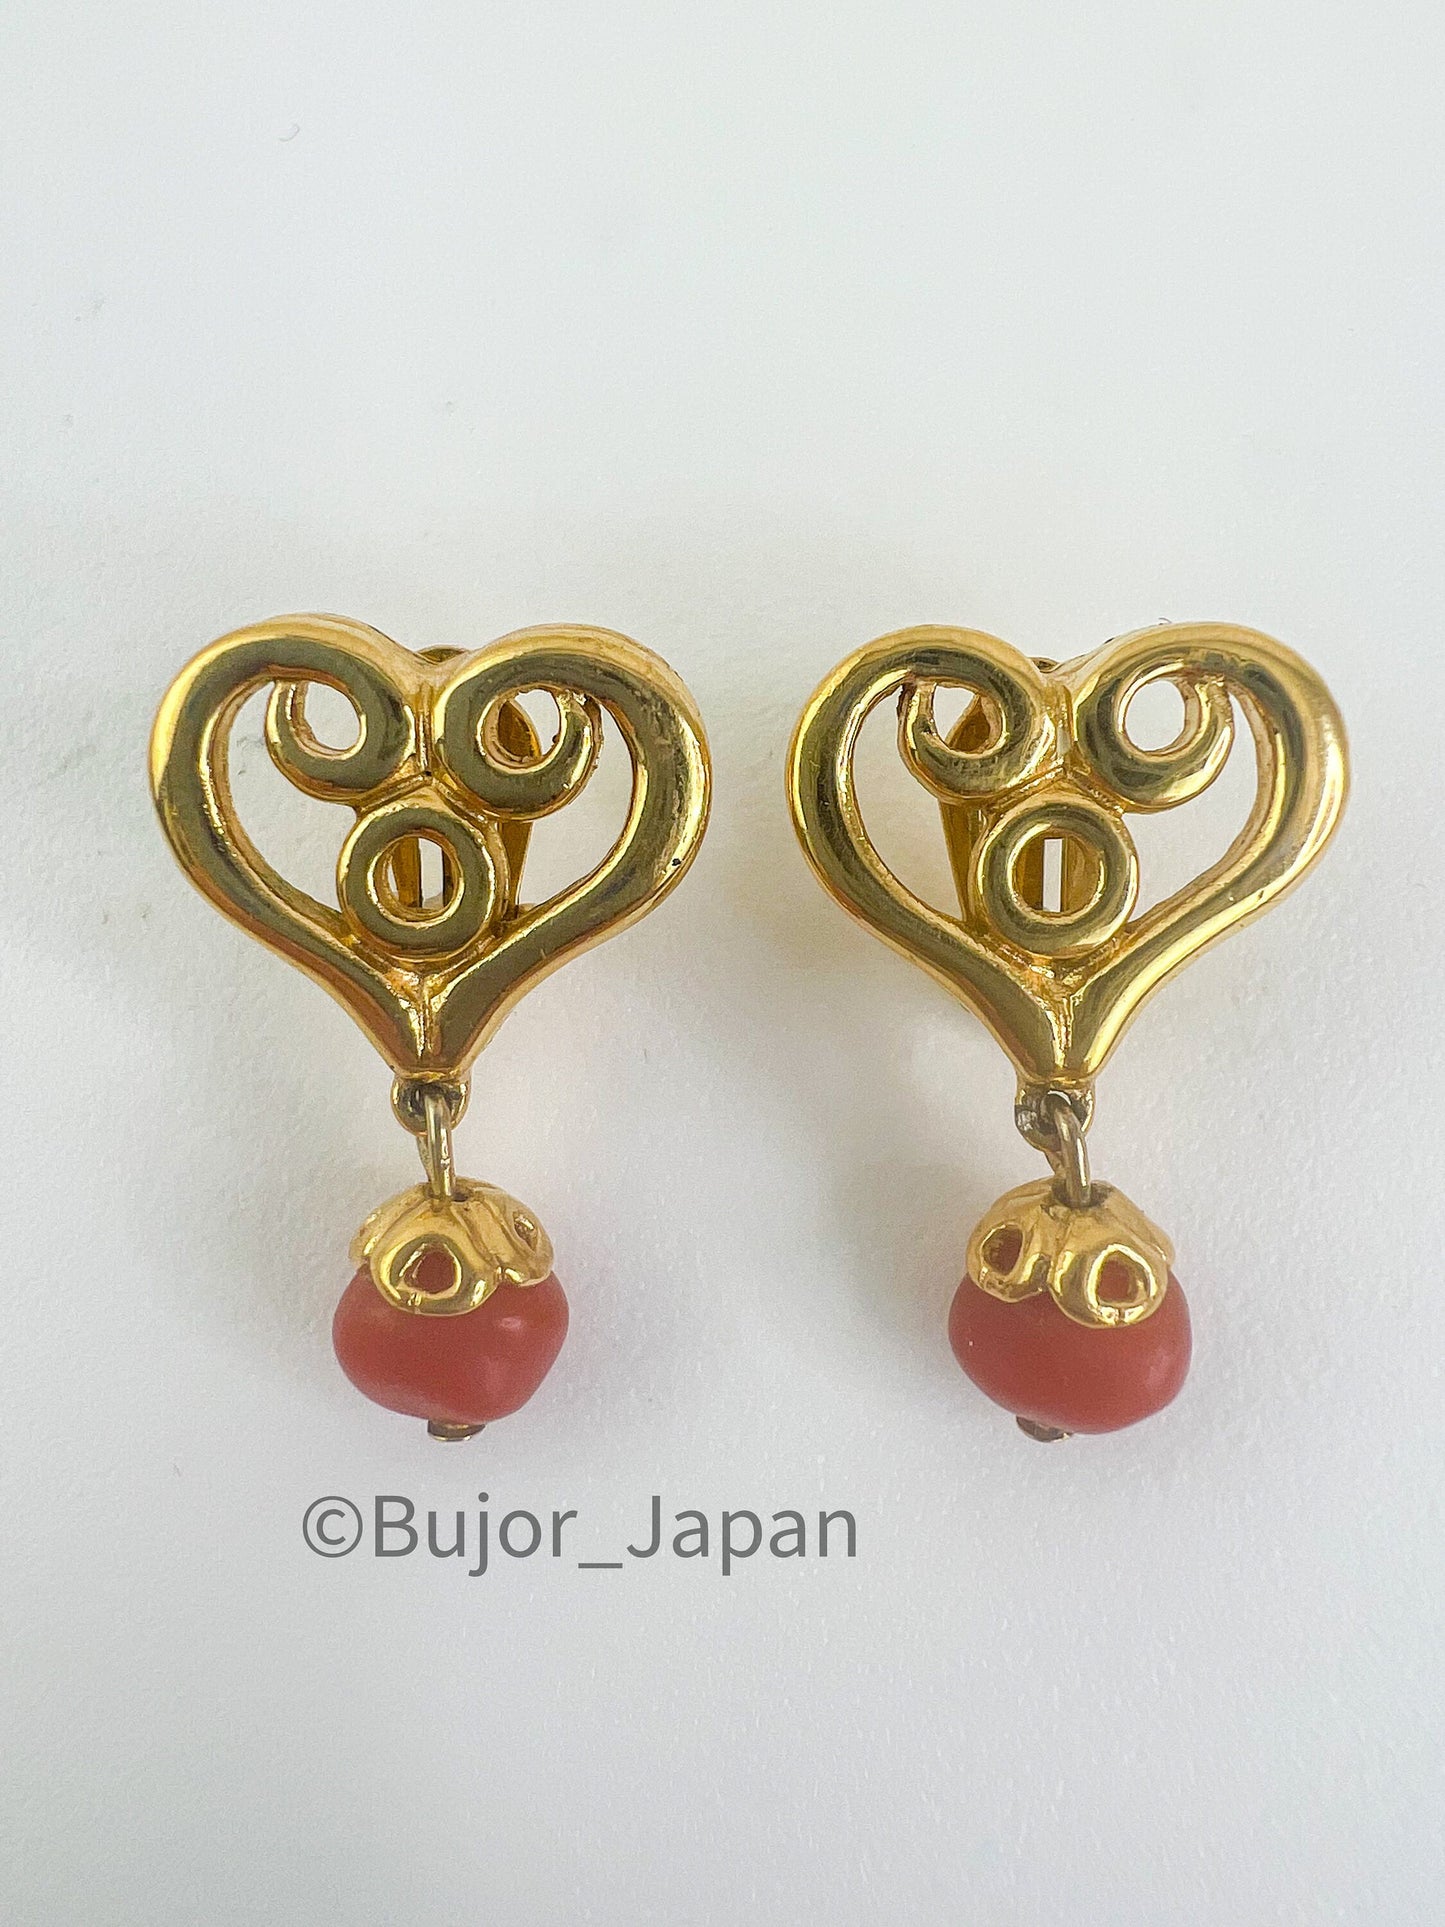 Givenchy Vintage Small Heart Charm Dangle Earrings, Gold Tone Earrings, Heart Drop Earrings, Minimalist Earrings Cute Earrings